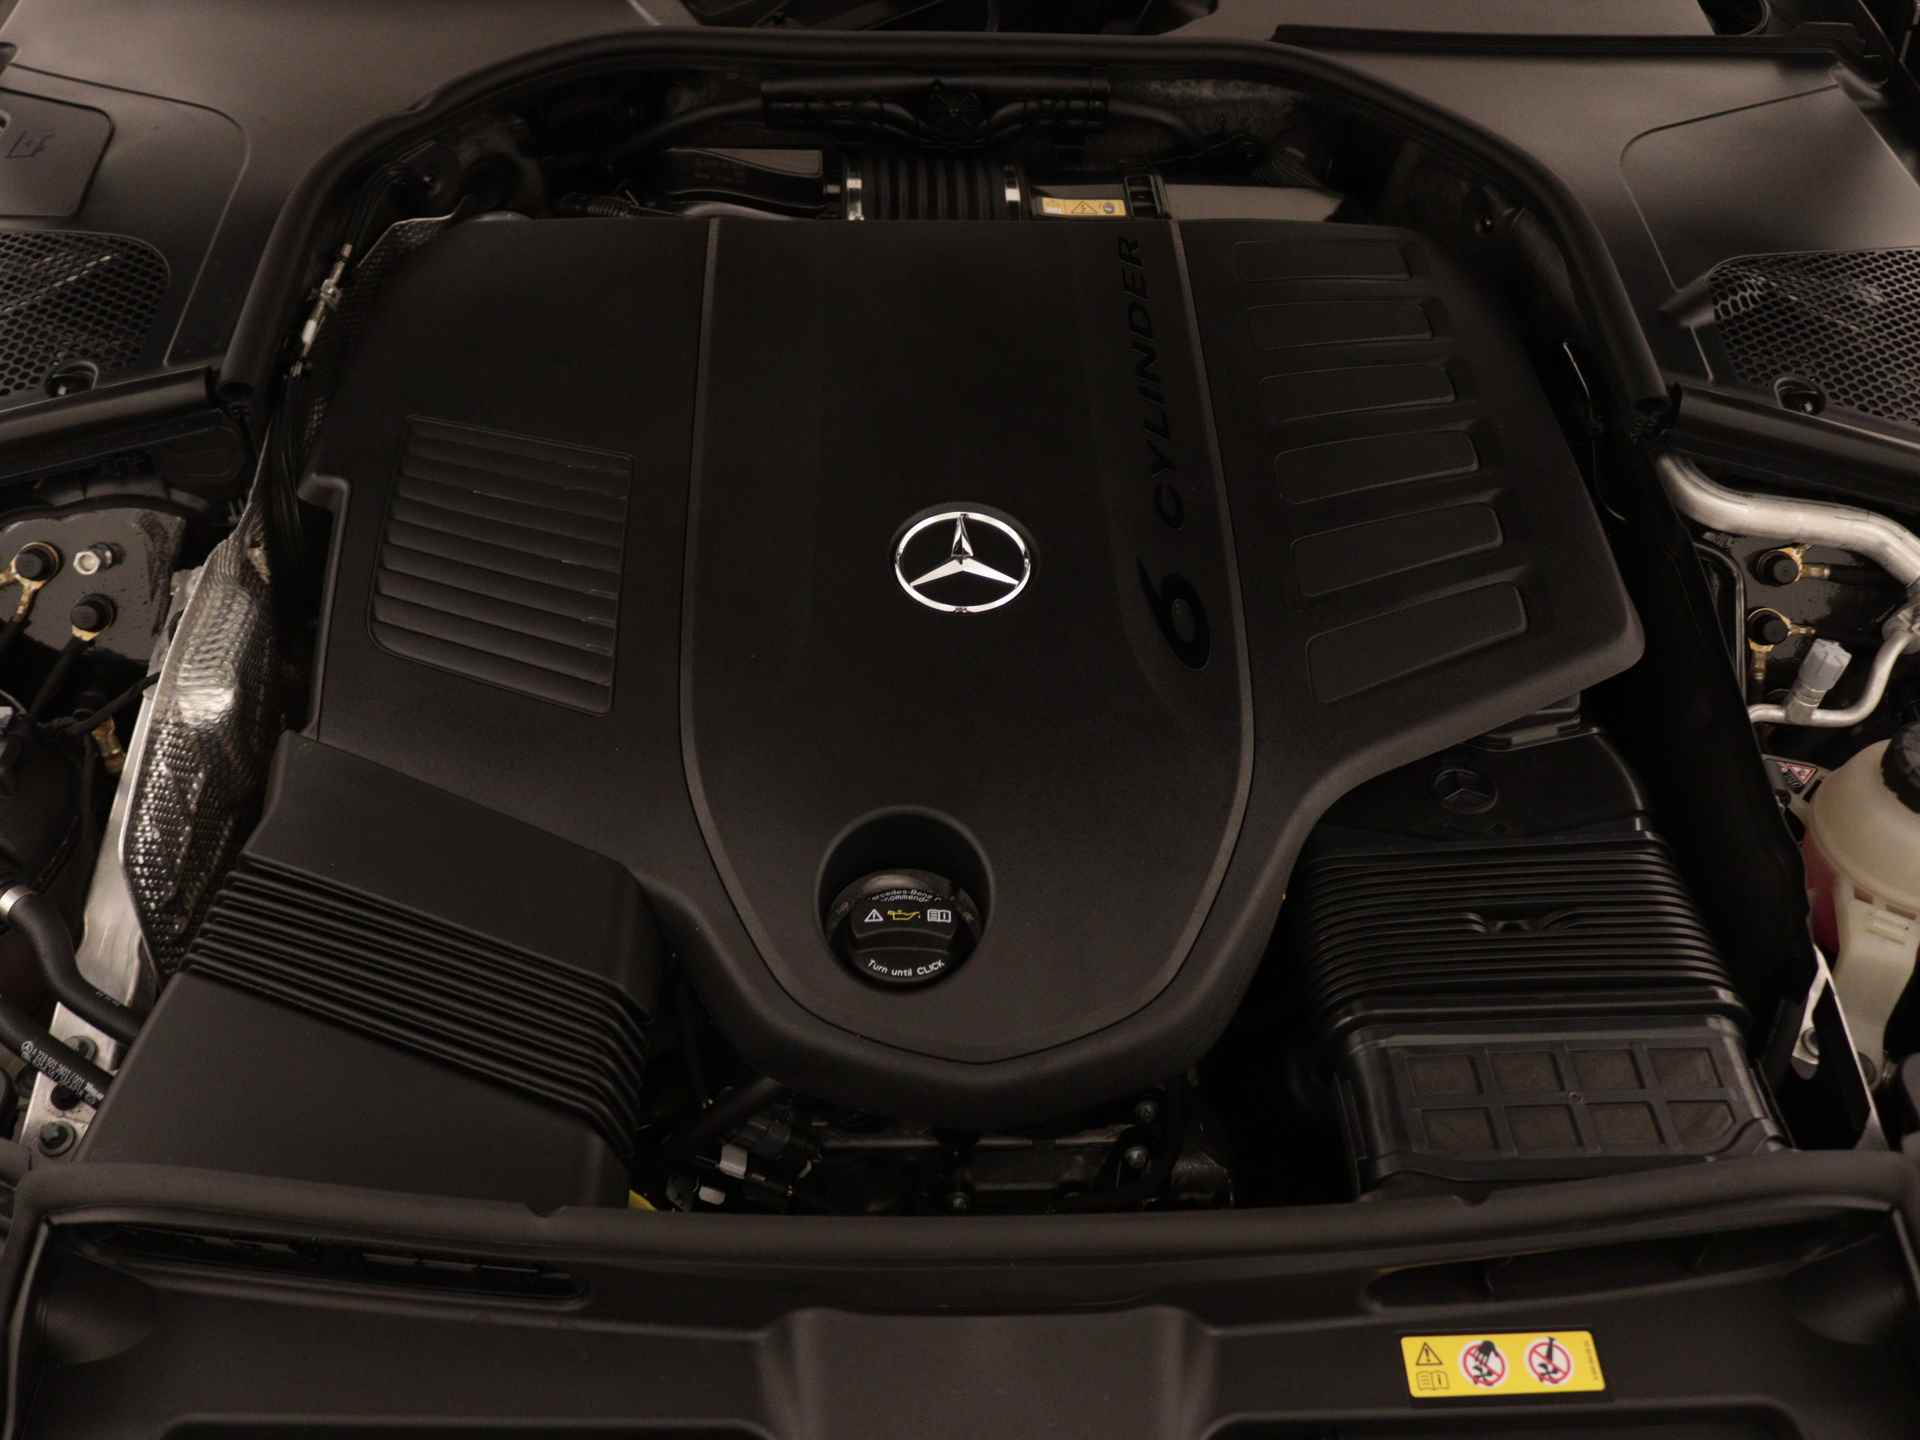 Mercedes-Benz S-Klasse 450 e Lang AMG Line Multi spaaks lichtmetalen velgen| Premium plus pakket | Night Pakket | Achteras meesturend 4,5 graad | Alarm klasse 5 | inclusief 24 maanden MB Certified garantie voor europa - 34/37